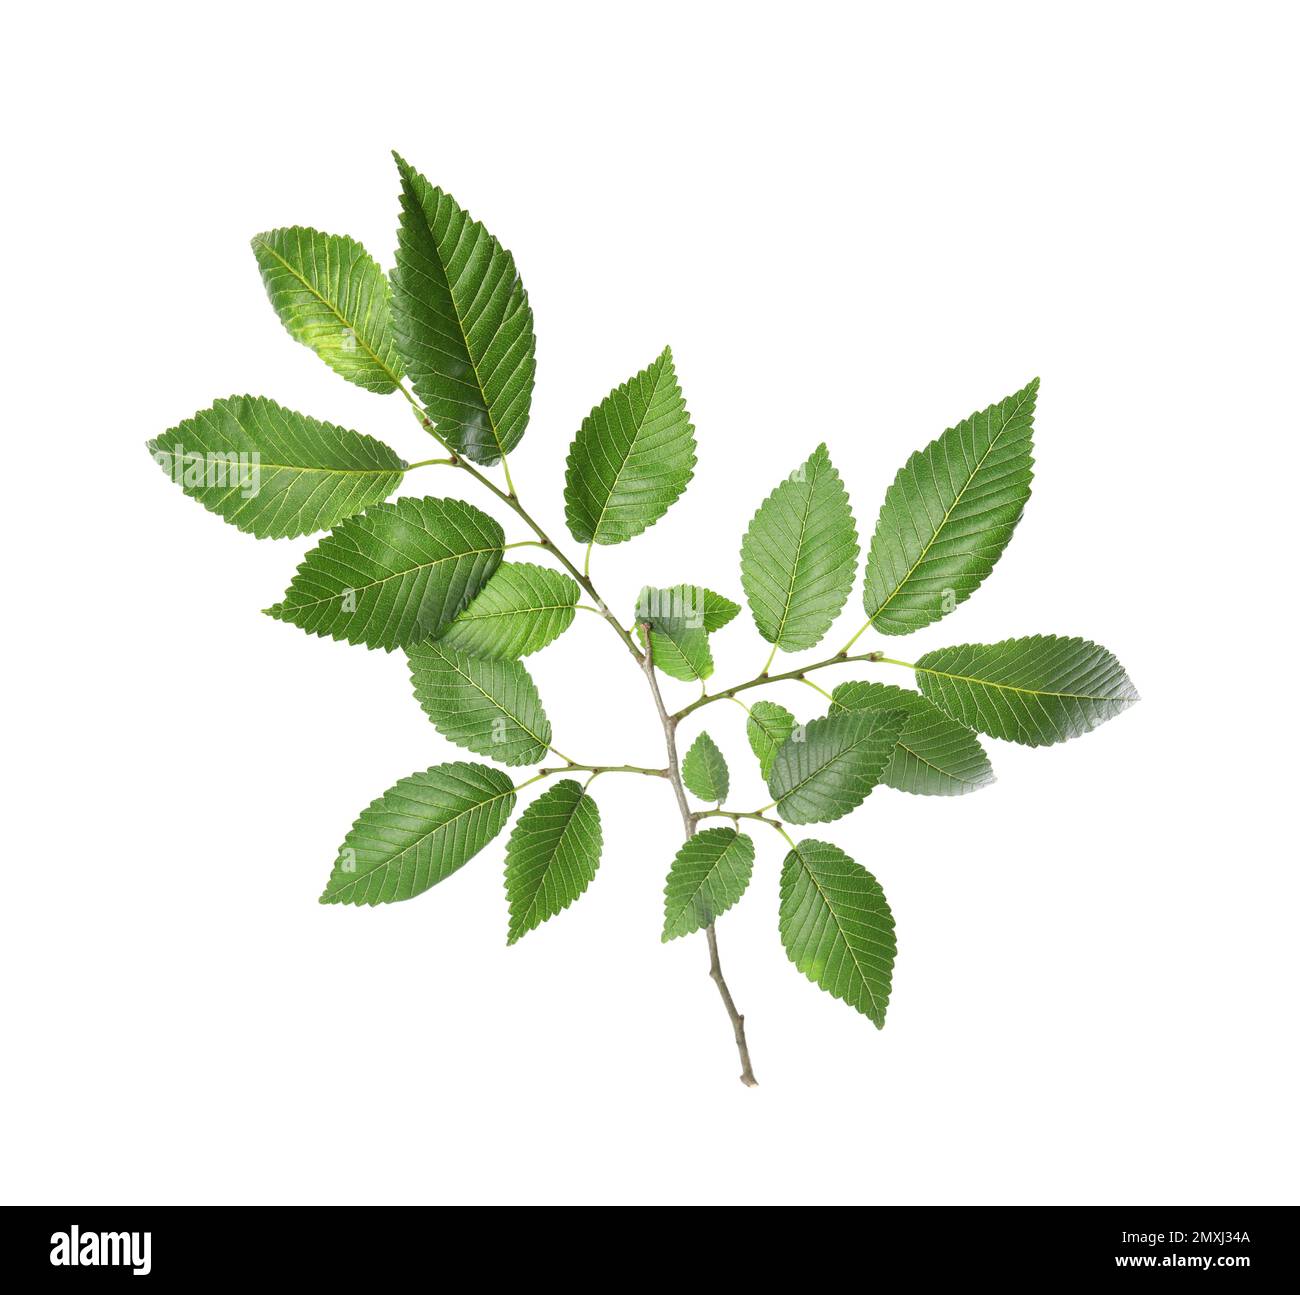 Branche d'orme avec jeunes feuilles vertes fraîches isolées sur blanc. Saison de printemps Banque D'Images